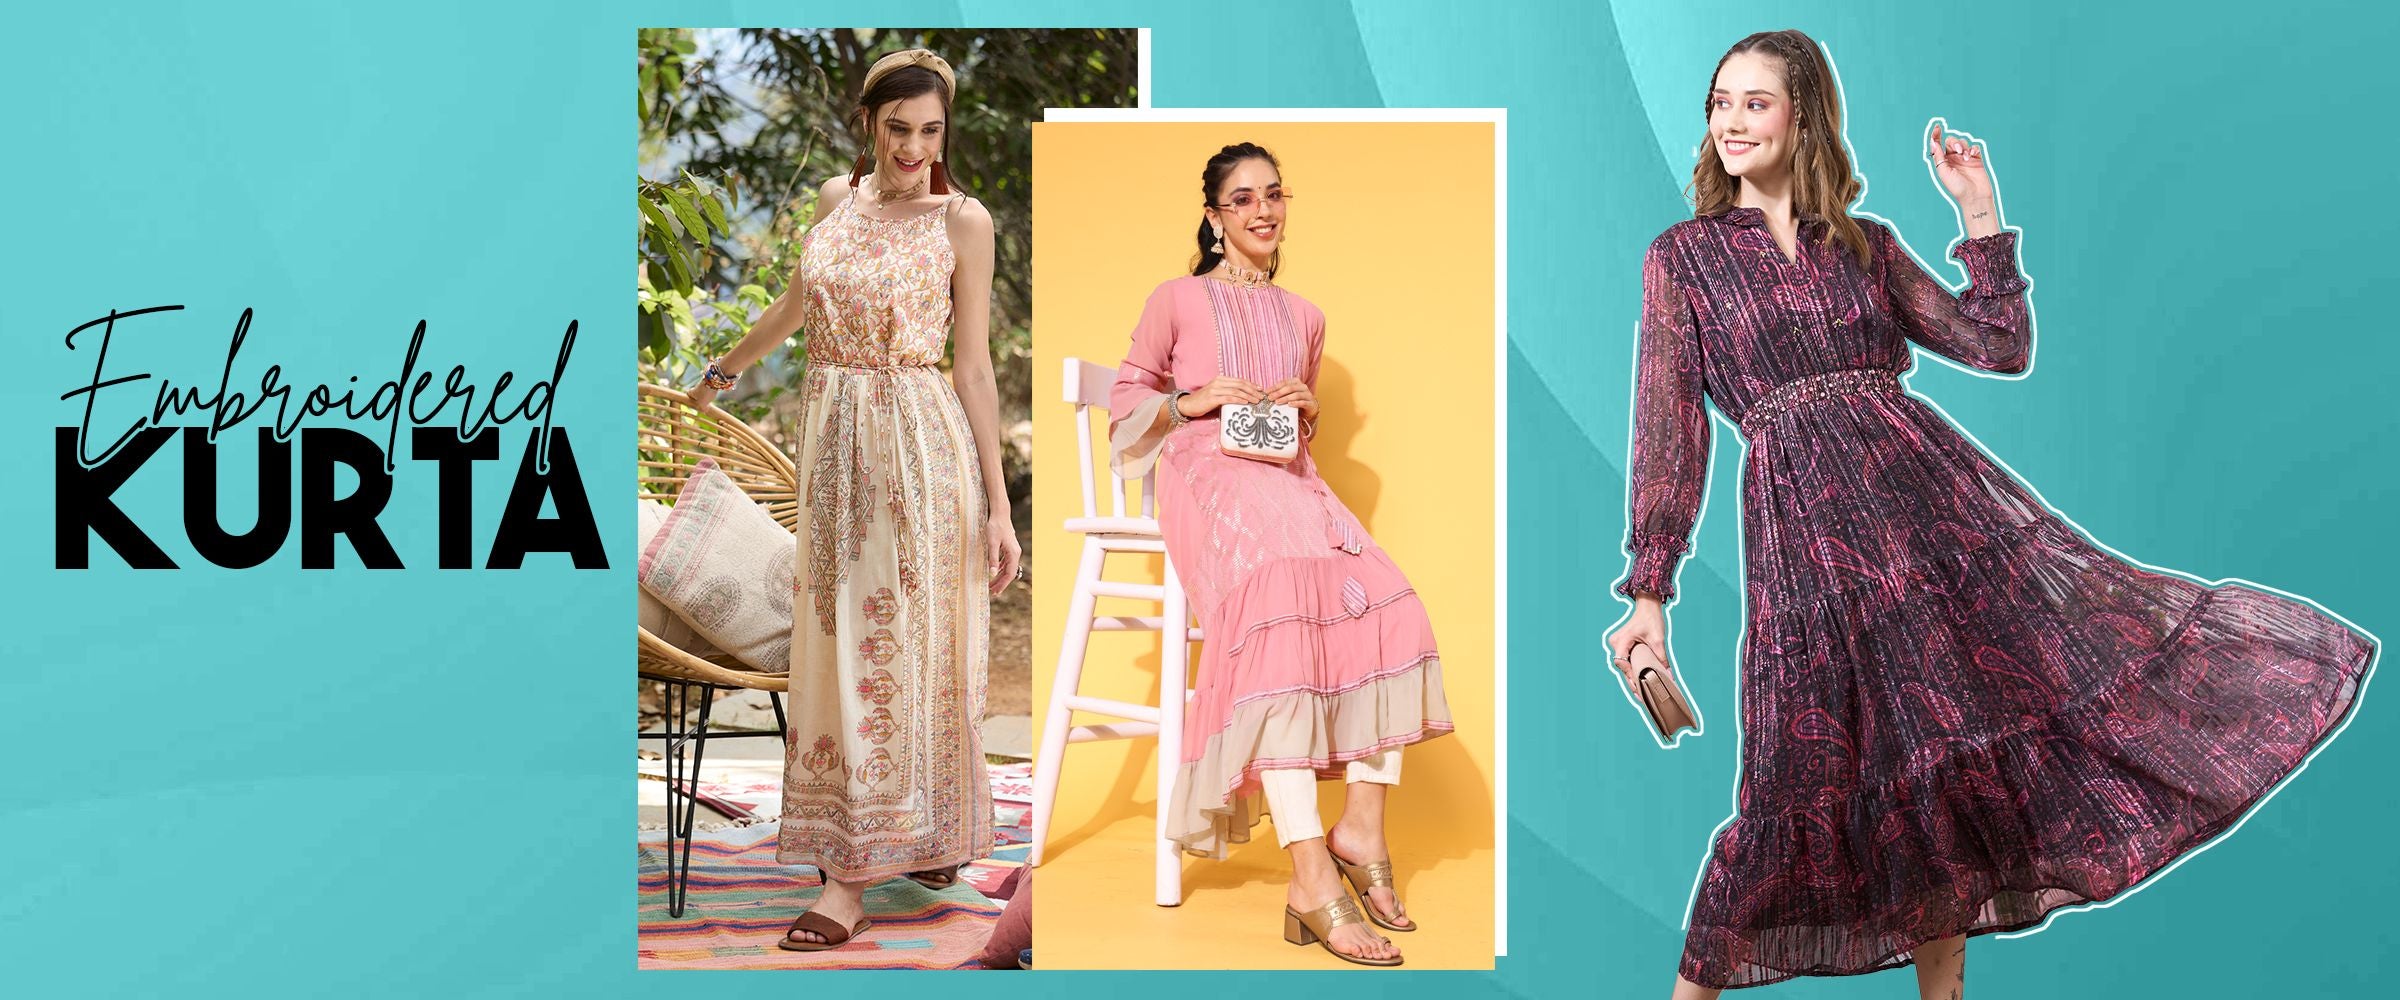 Monsoon Fashion Weather is Here | Style it With taruni - Taruni Blog - Buy  Kurtis online - Designer Kurtis for Women & Girls, Ethnic Indian Kurtis